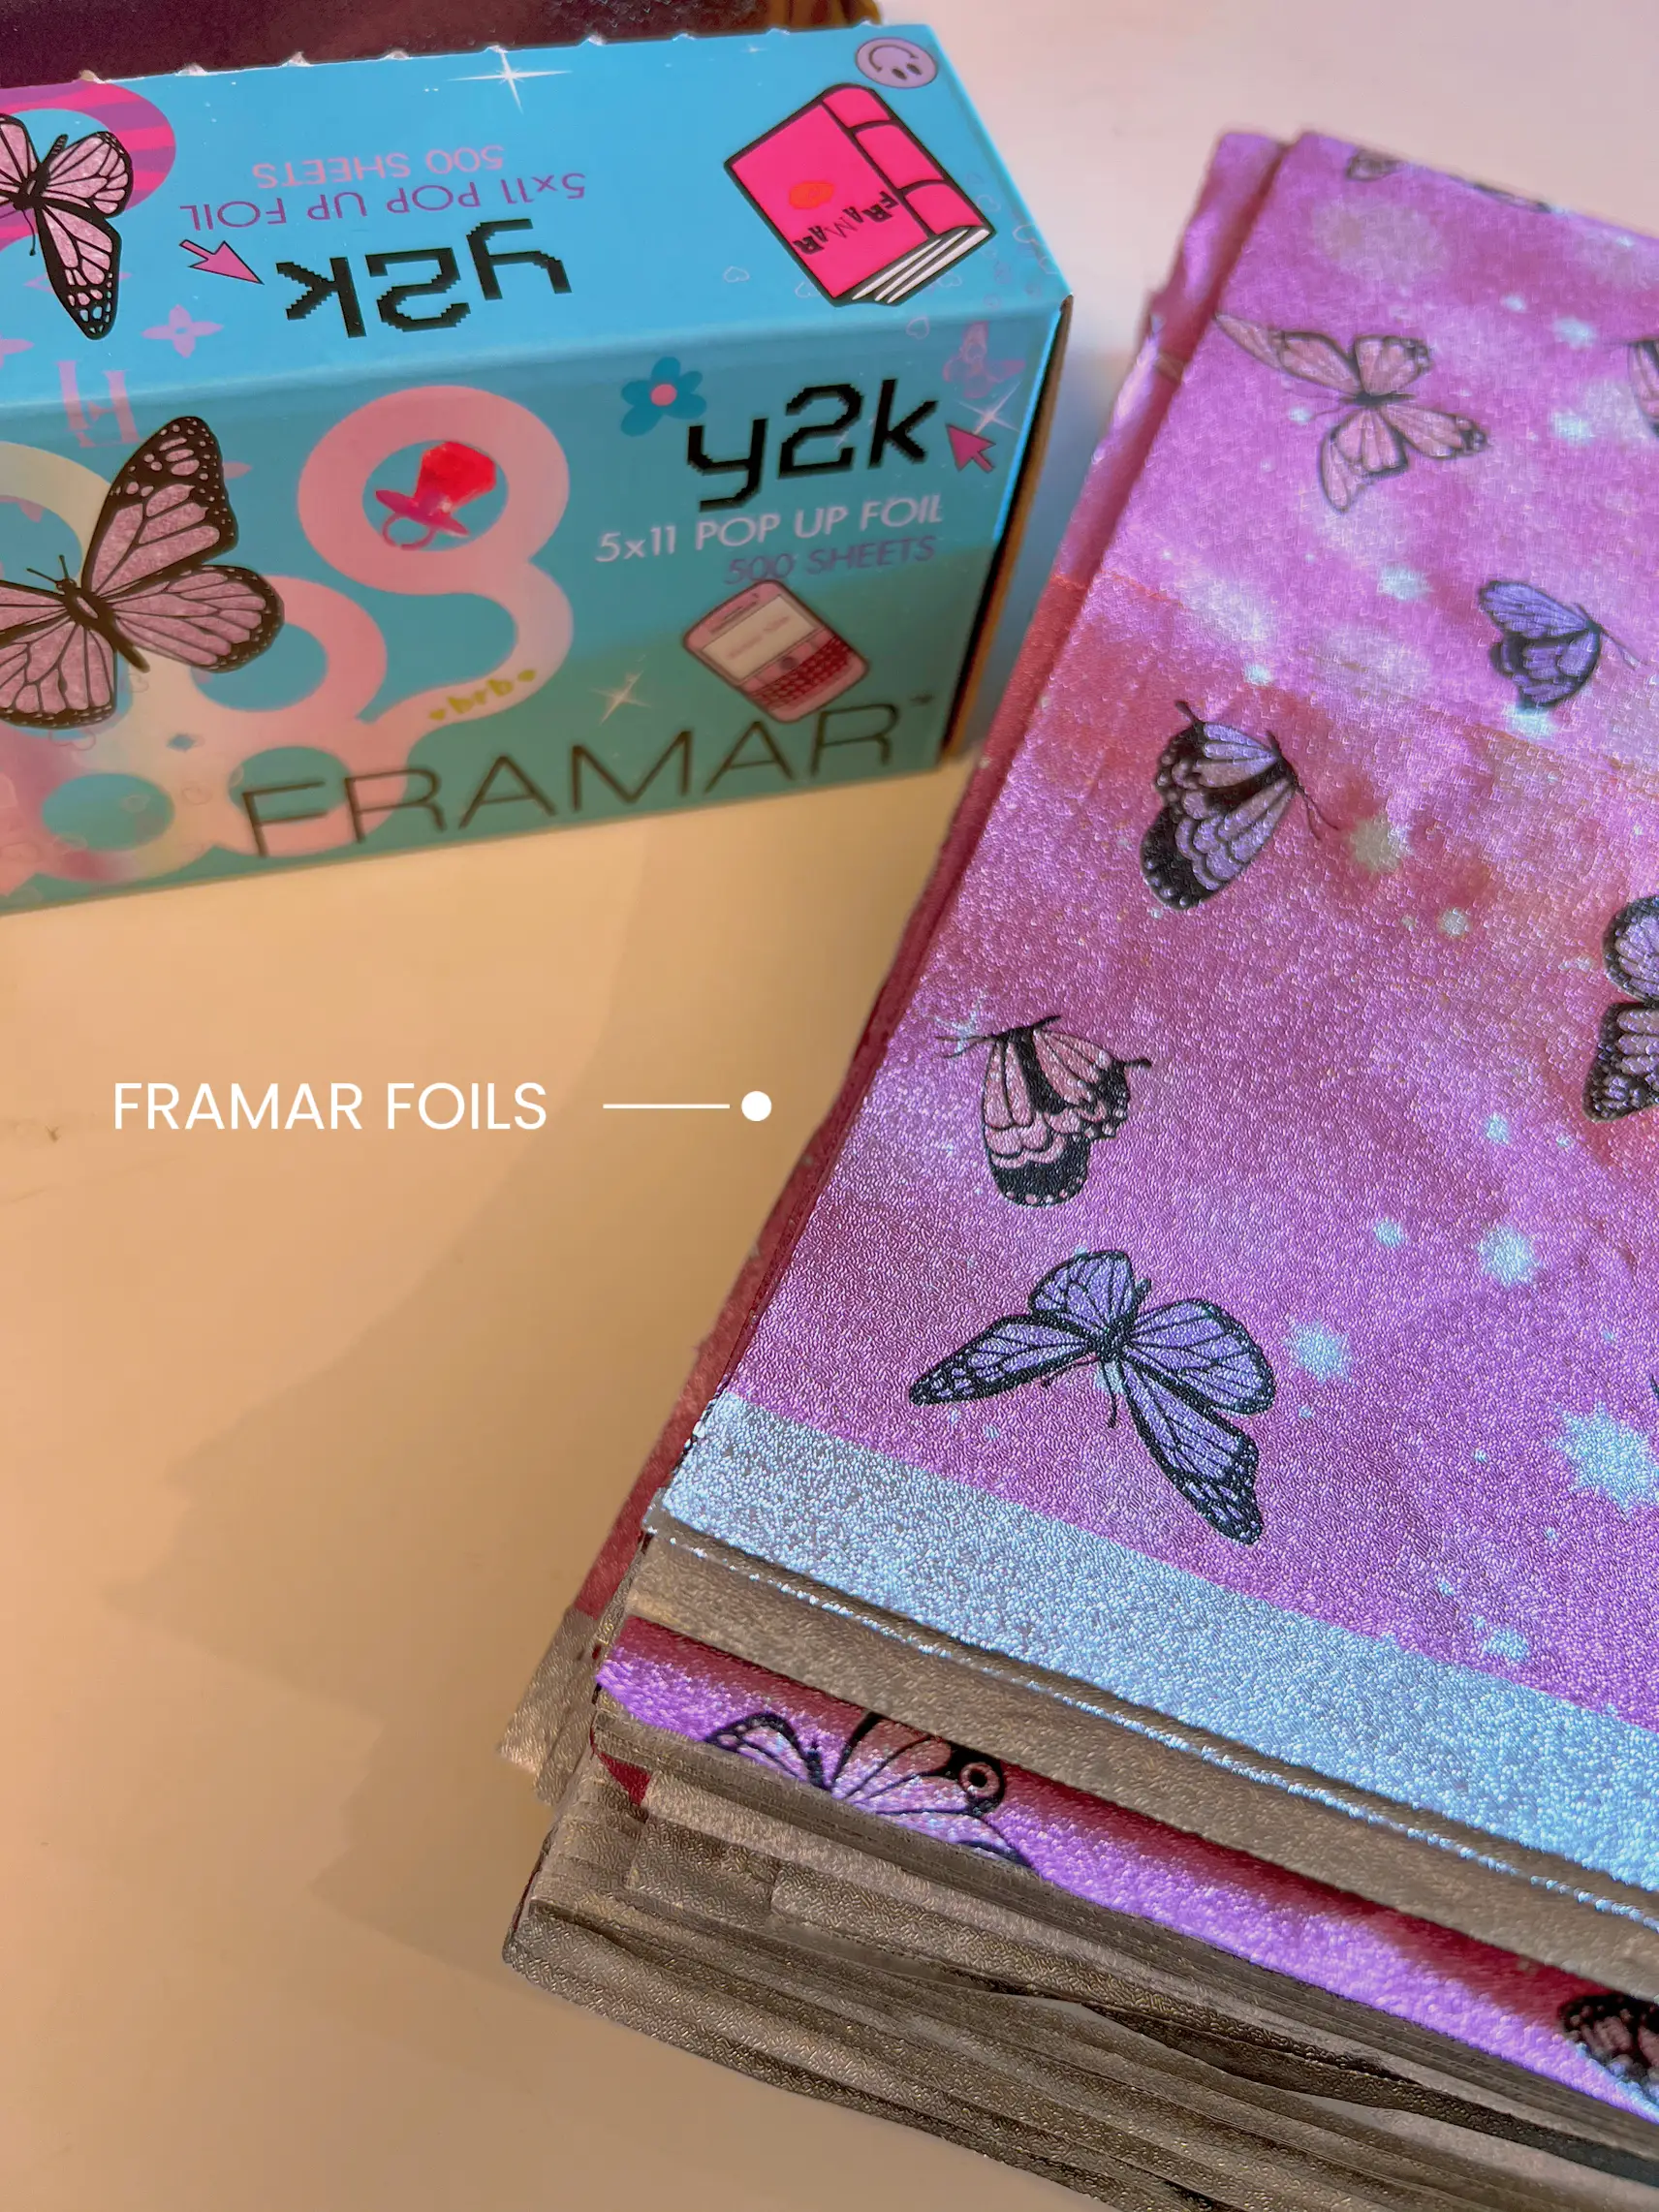 Pop-Up Foils - Y2K, Framar